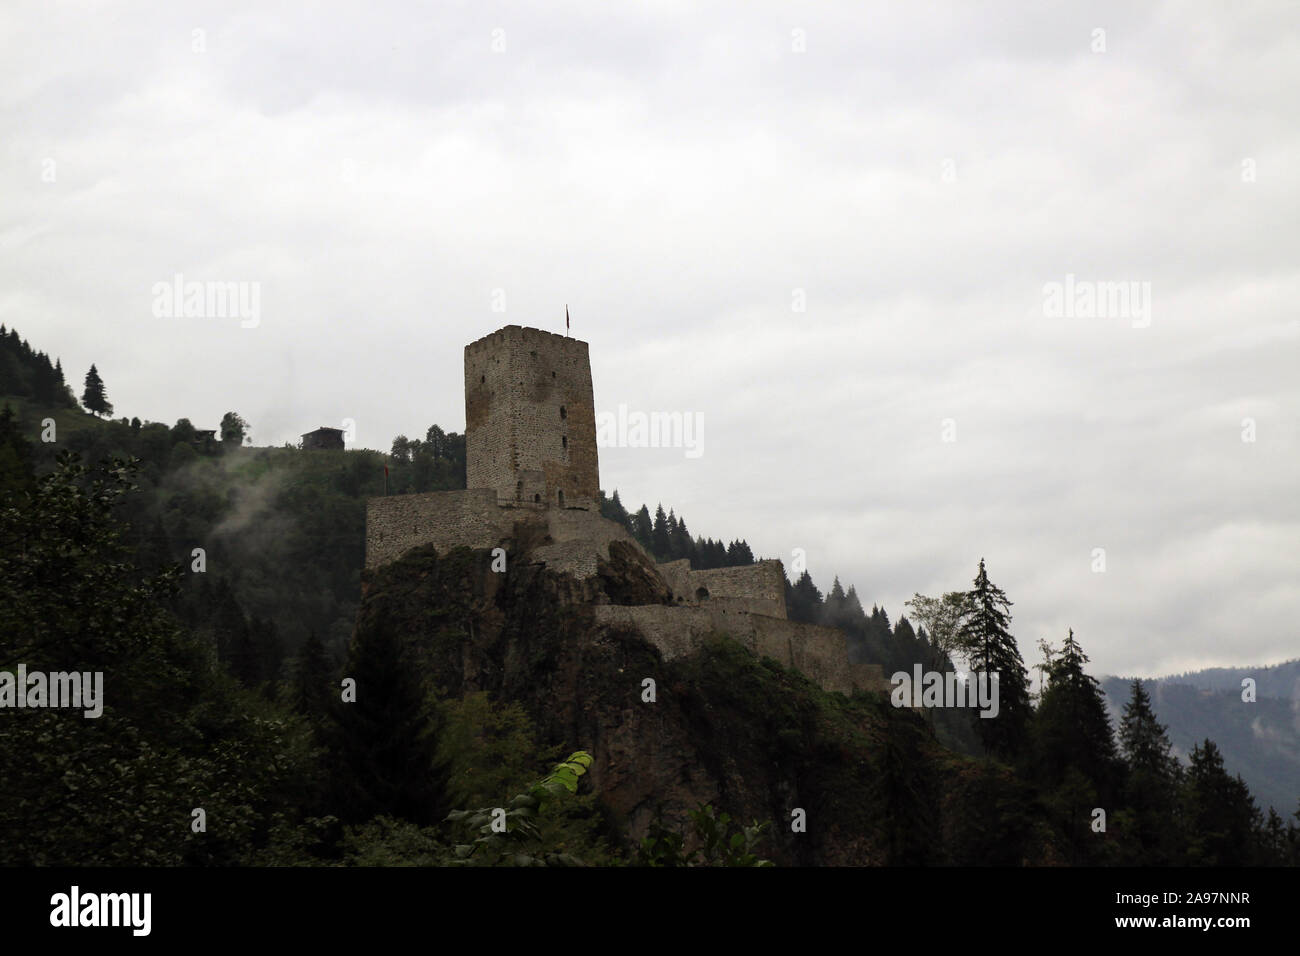 Zilkale is a medieval castle located in the Fırtına Valley in çamlıhemşin rize turkey Stock Photo